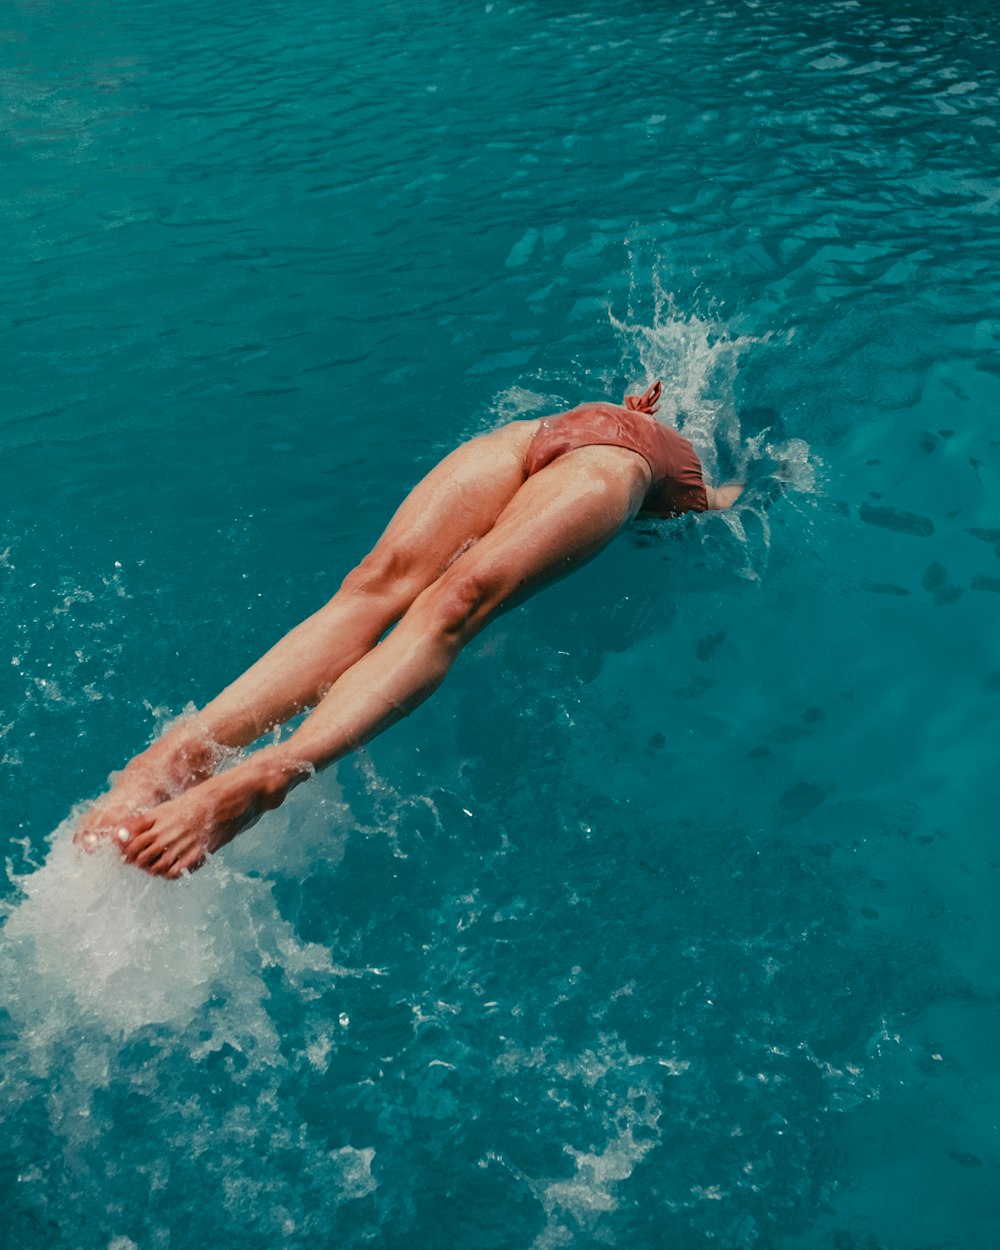 茶色の水着を着た女性が水に飛び込む